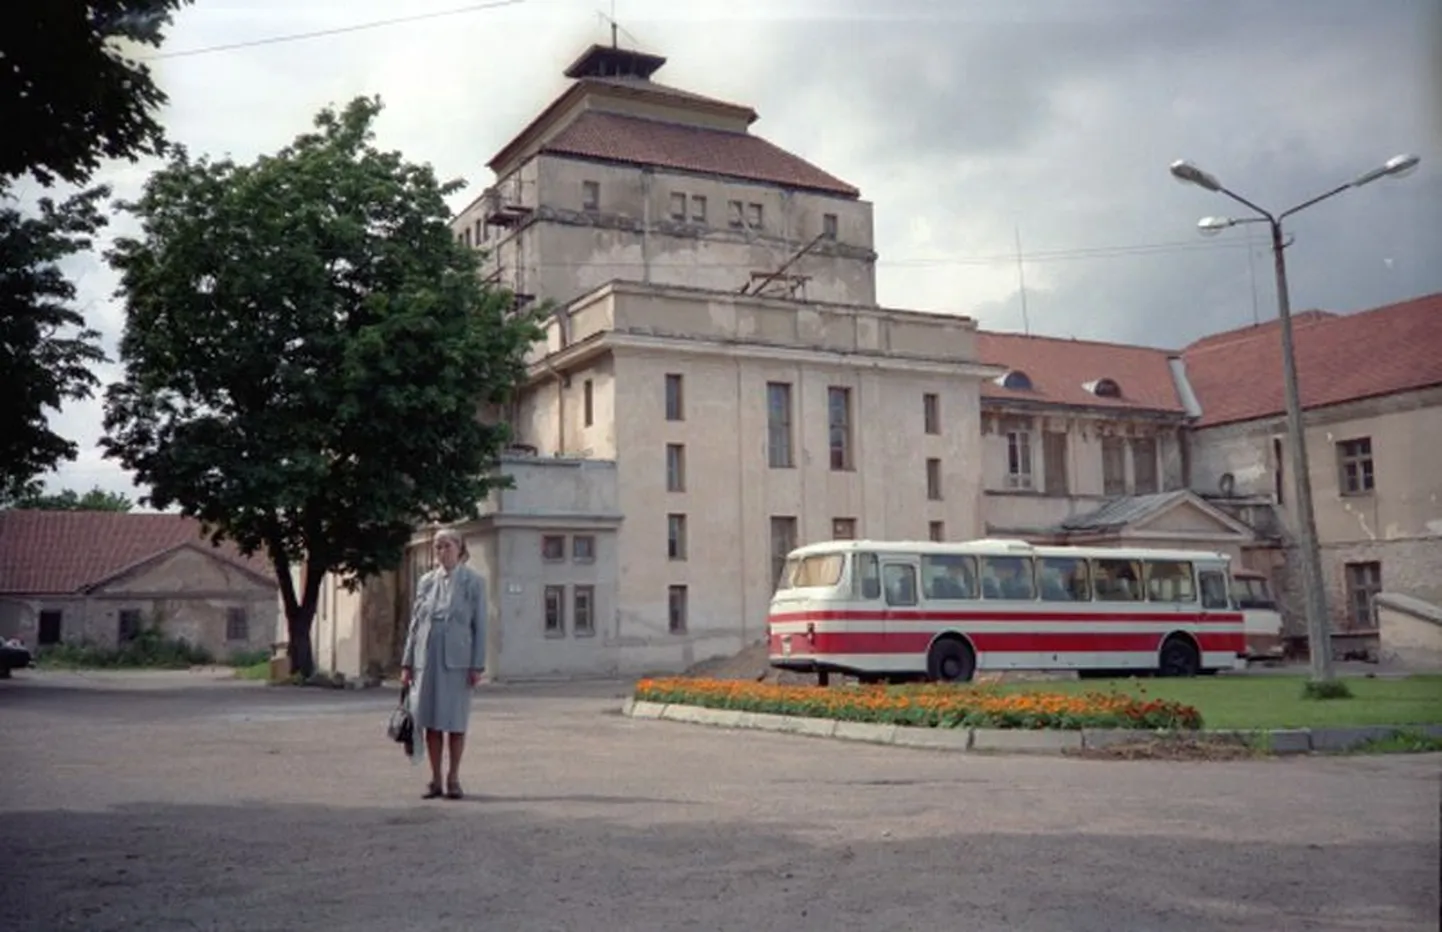 Rakvere teater nägi 1990. aastal välja üpris õnnetu – isegi teatri väike maja oli tollal veel rohtu kasvanud.